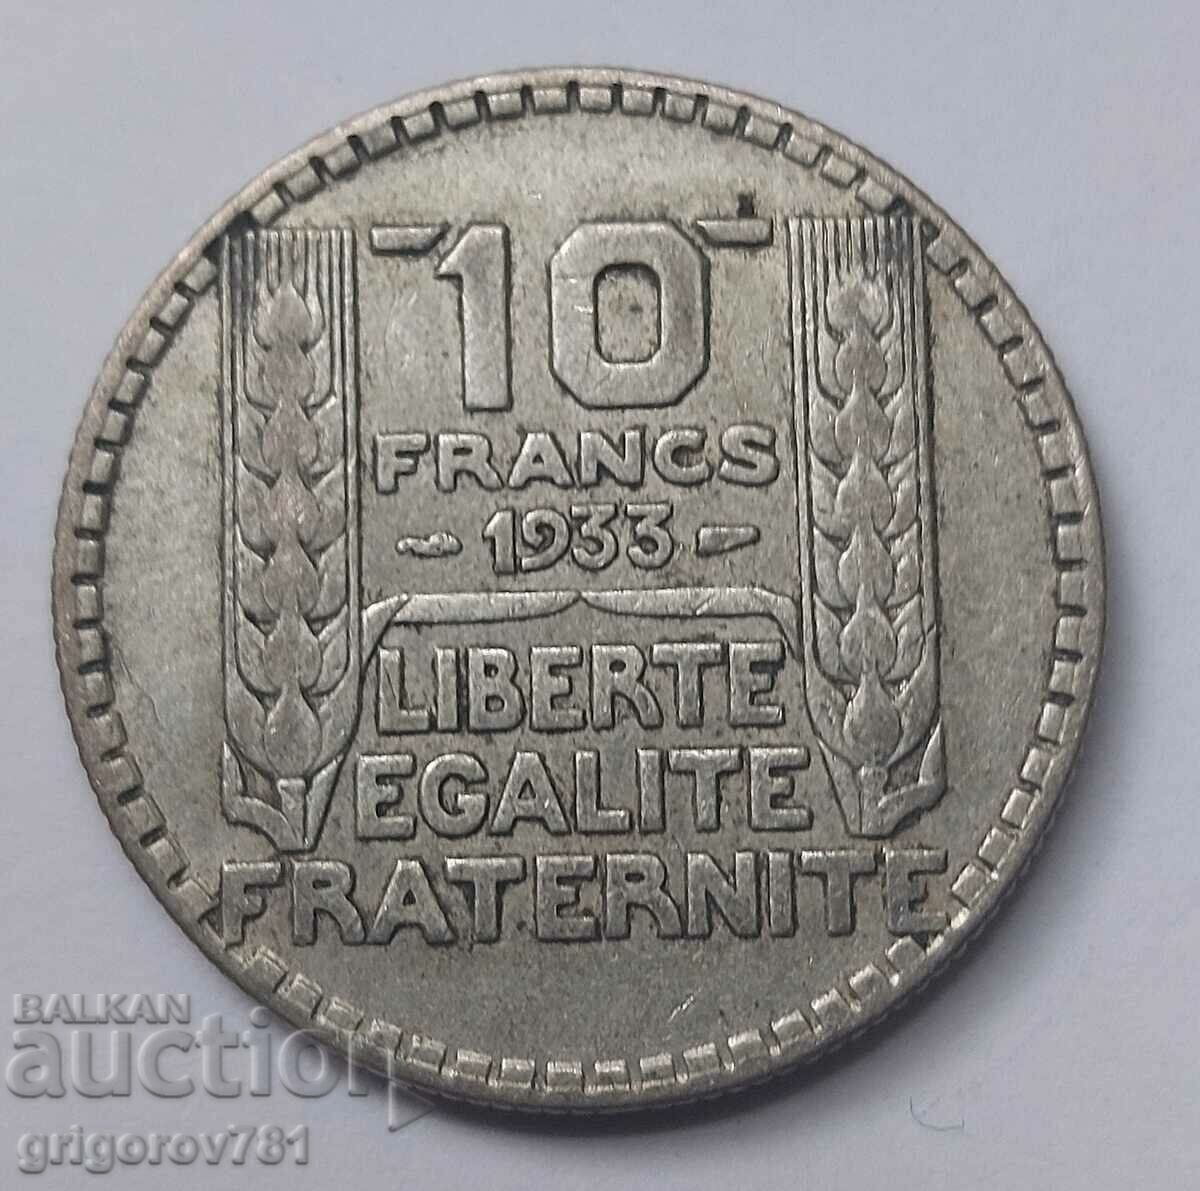 10 Franci Argint Franta 1933 - Moneda de argint #9